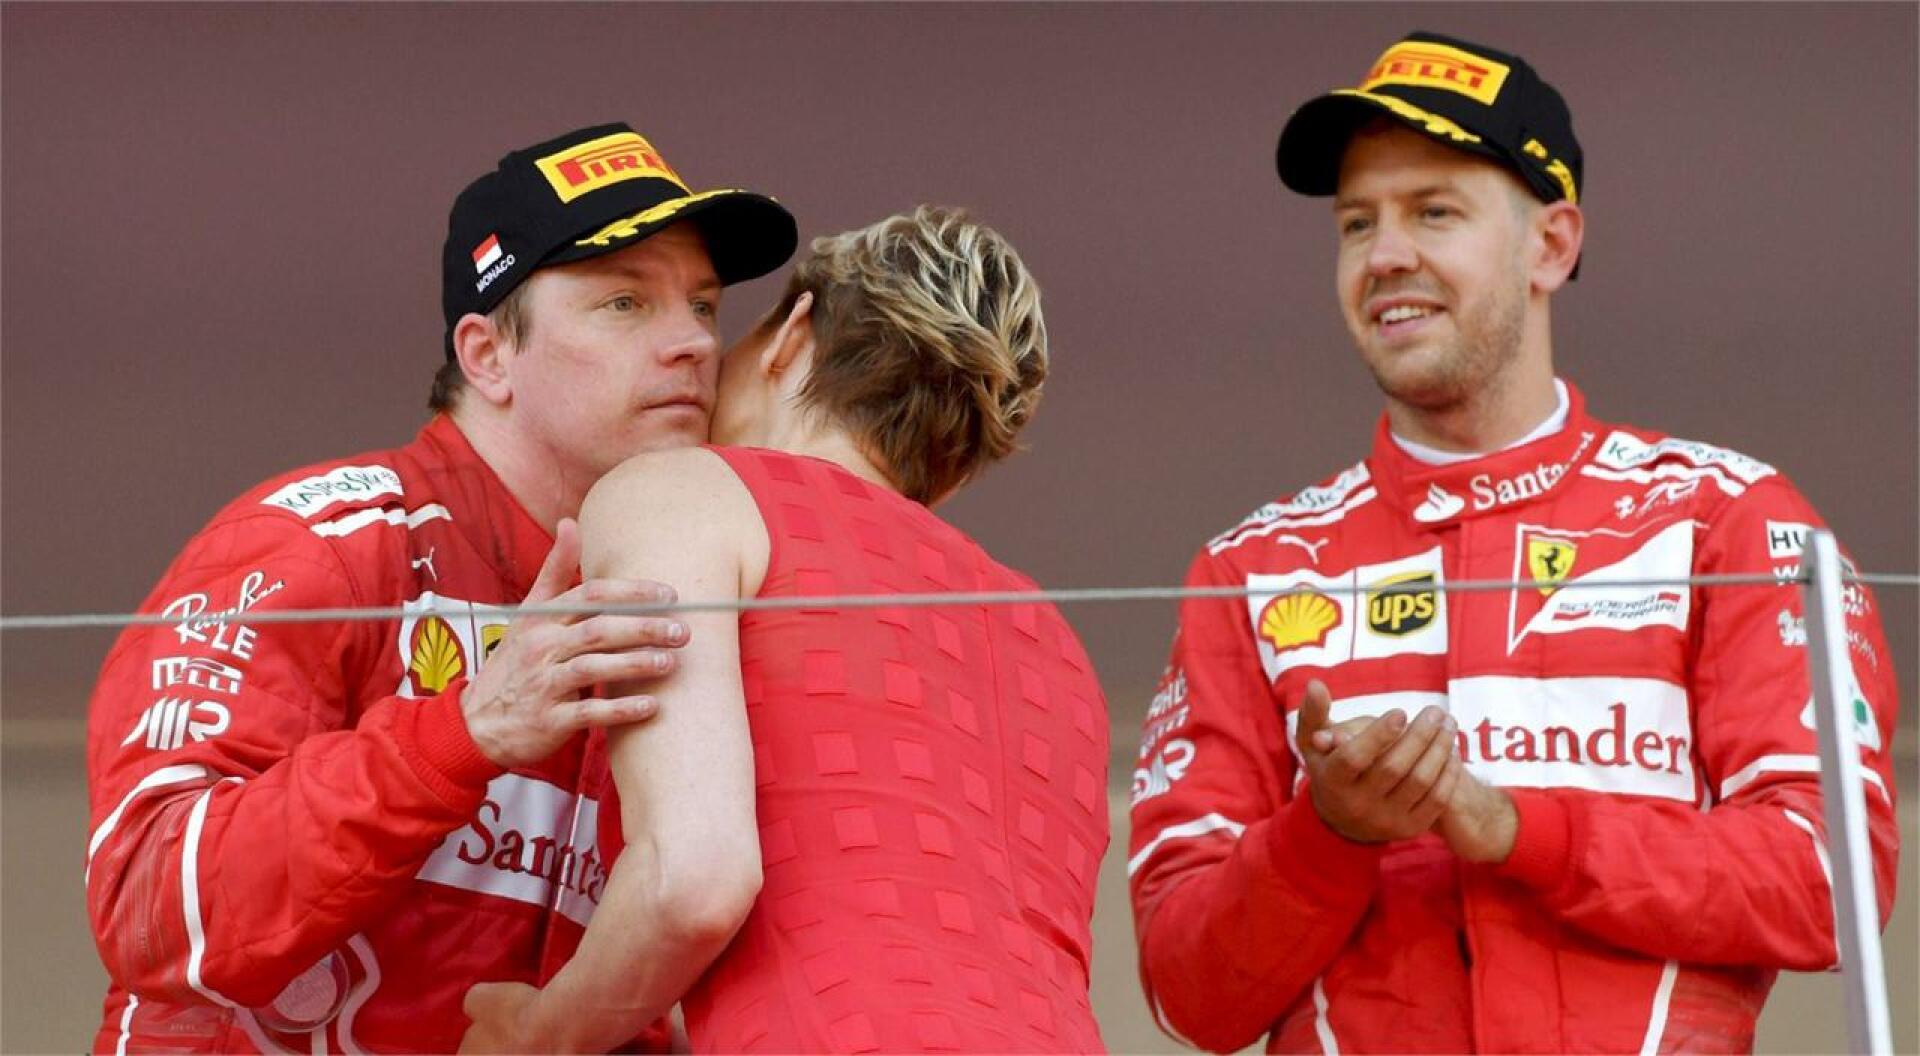 Kimi Räikkönen jäi palkintokorokkeella ilmeettömäksi, vaikka sai poskisuudelman Monacan prinsessa Charlenelta. LEHTIKUVA/AFP